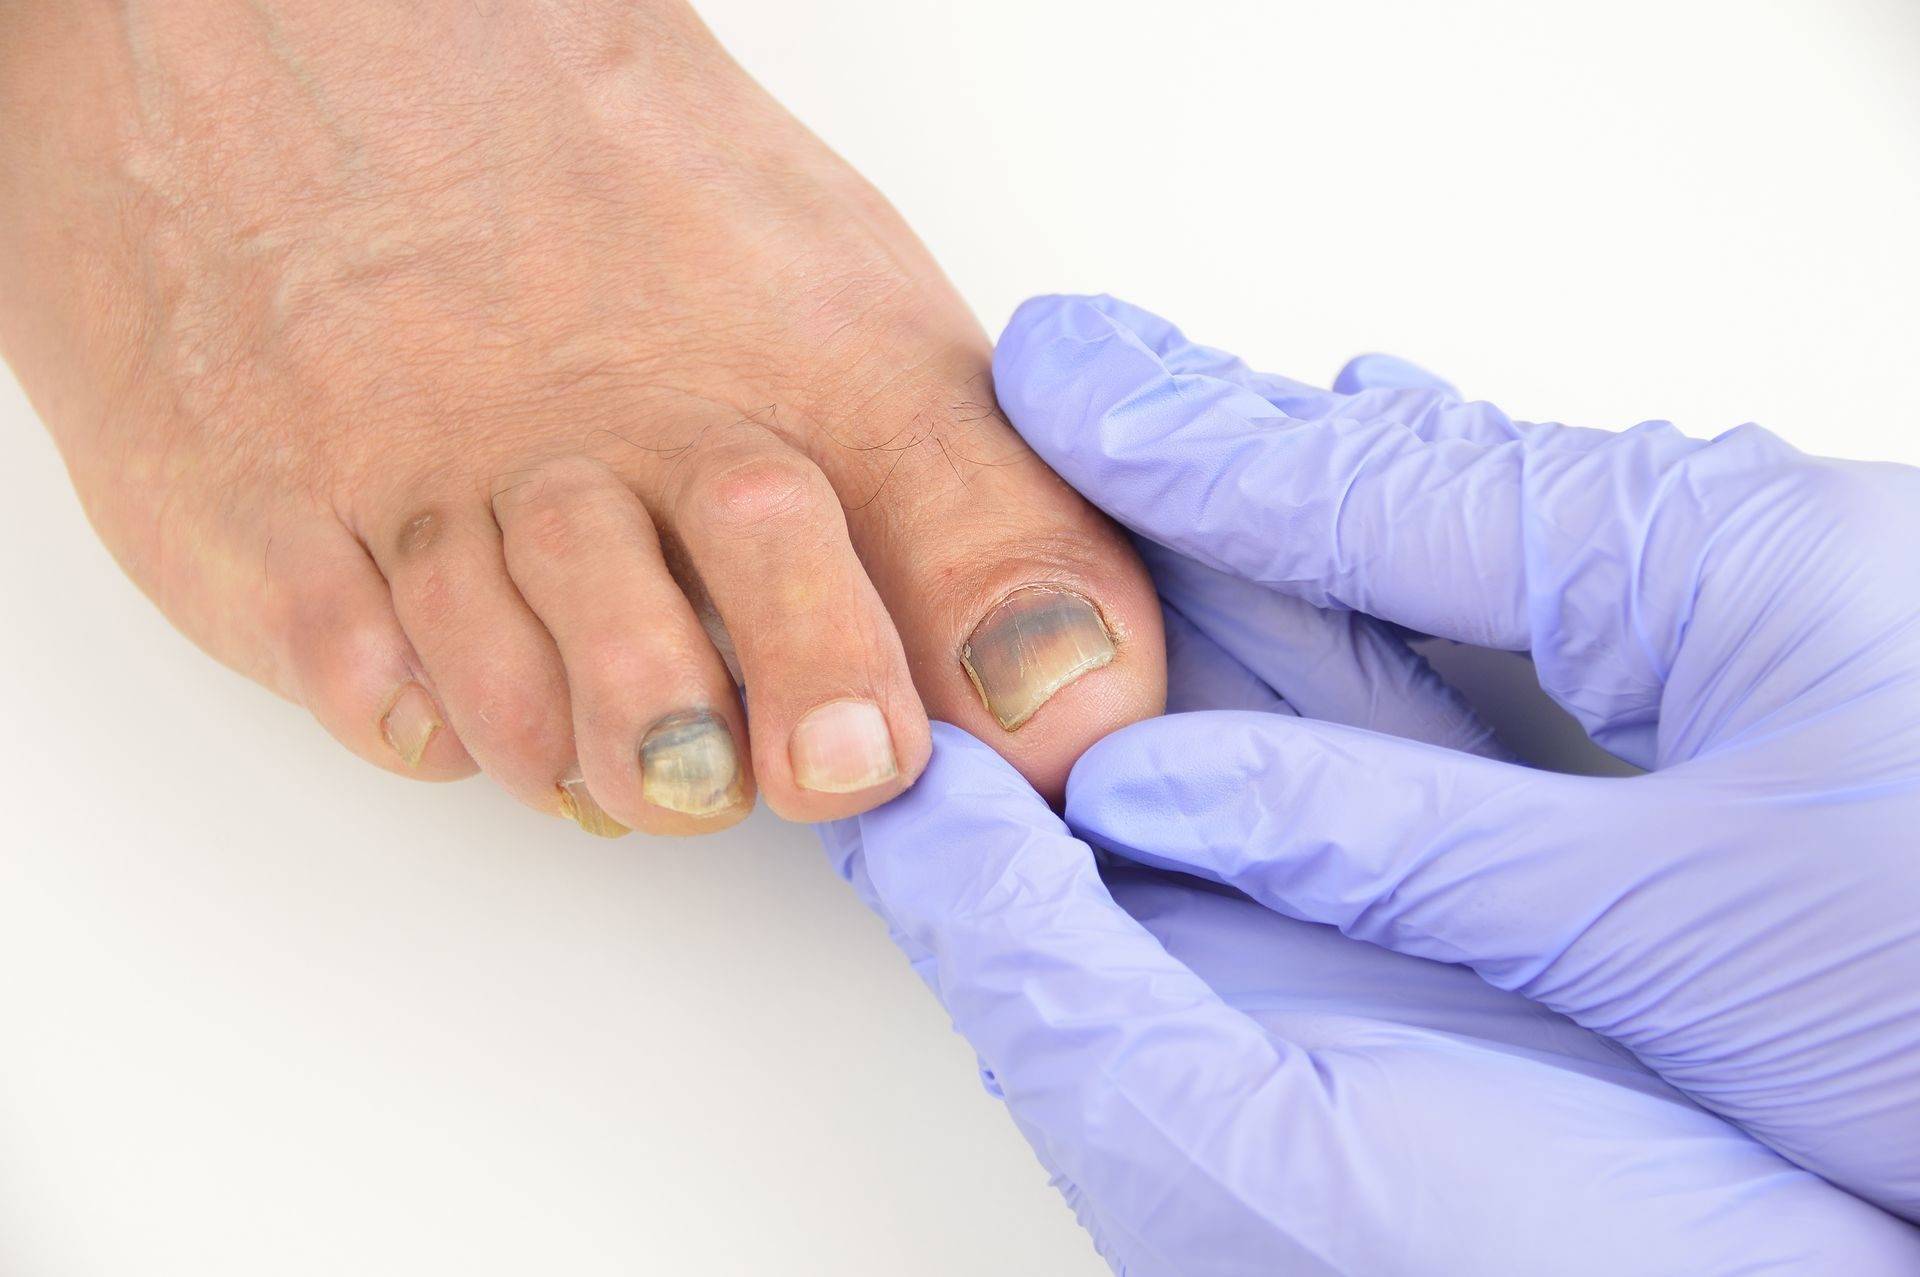 Почему чернеют ногти на ногах у женщин и как лечить